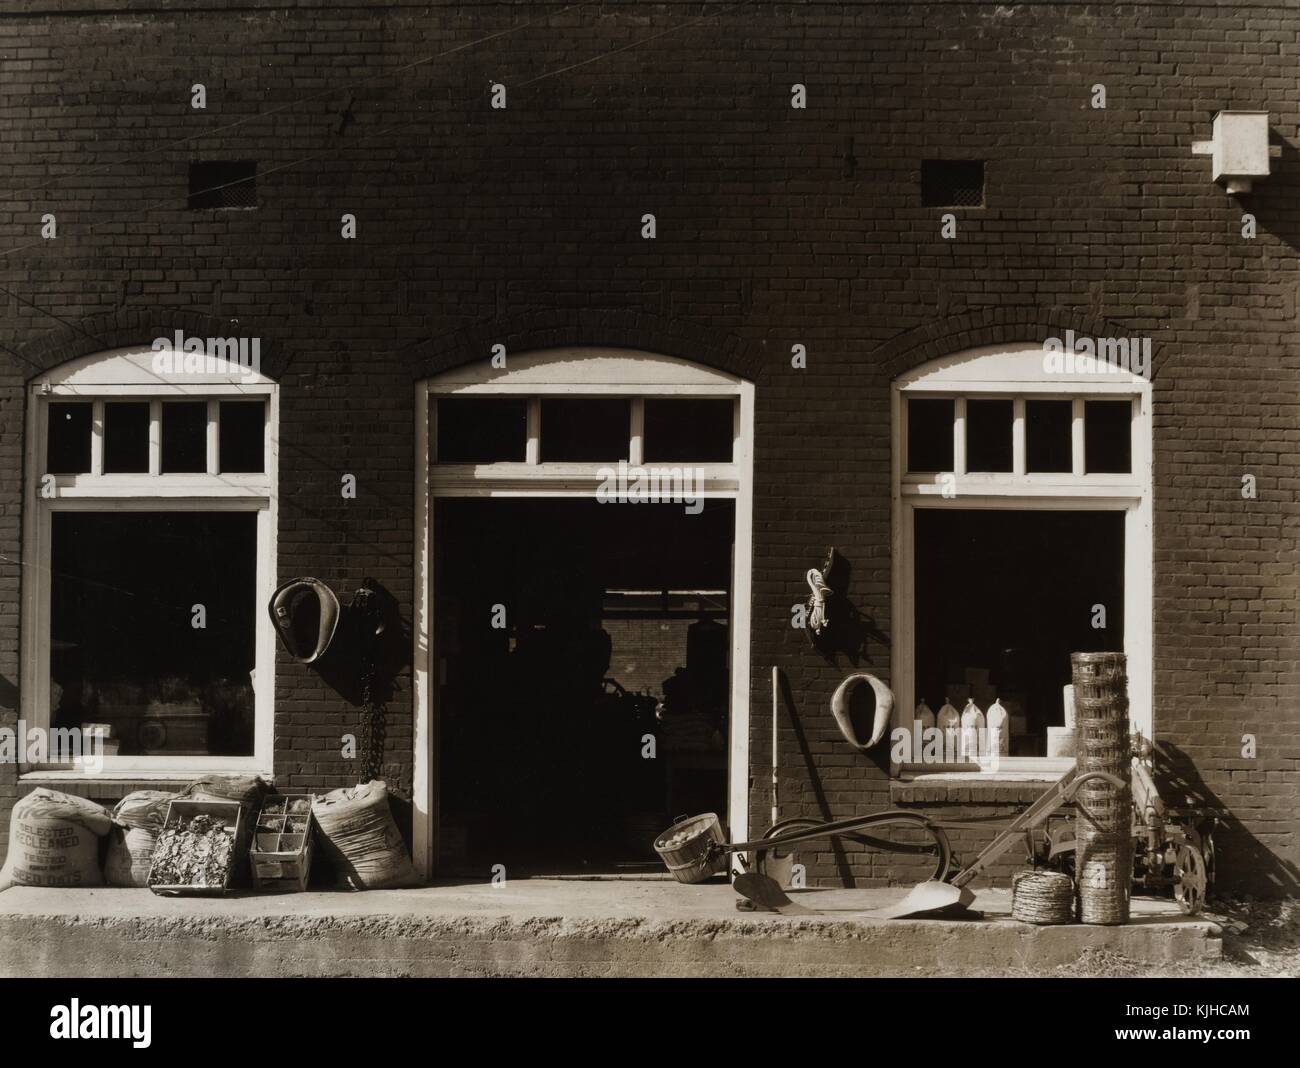 Photographie en noir et blanc de l'avant d'un magasin général, par Walker Evans, photographe américain connu pour son travail pour la Farm Security Administration documentant les effets de la grande dépression, le Mississippi, 1936. à partir de la bibliothèque publique de new york. Banque D'Images